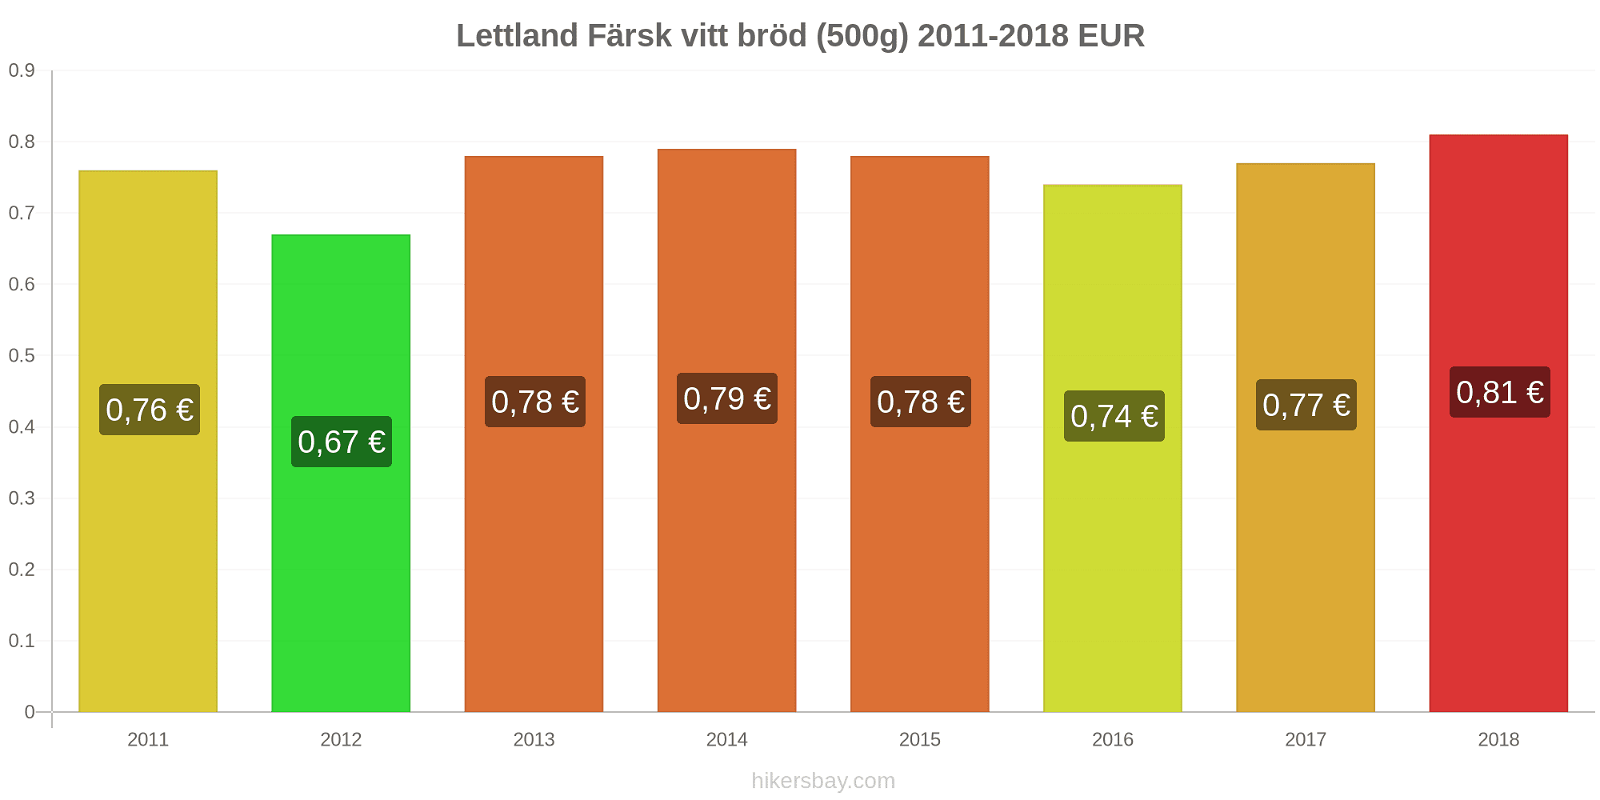 Lettland prisändringar Färsk vitt bröd (500g) hikersbay.com